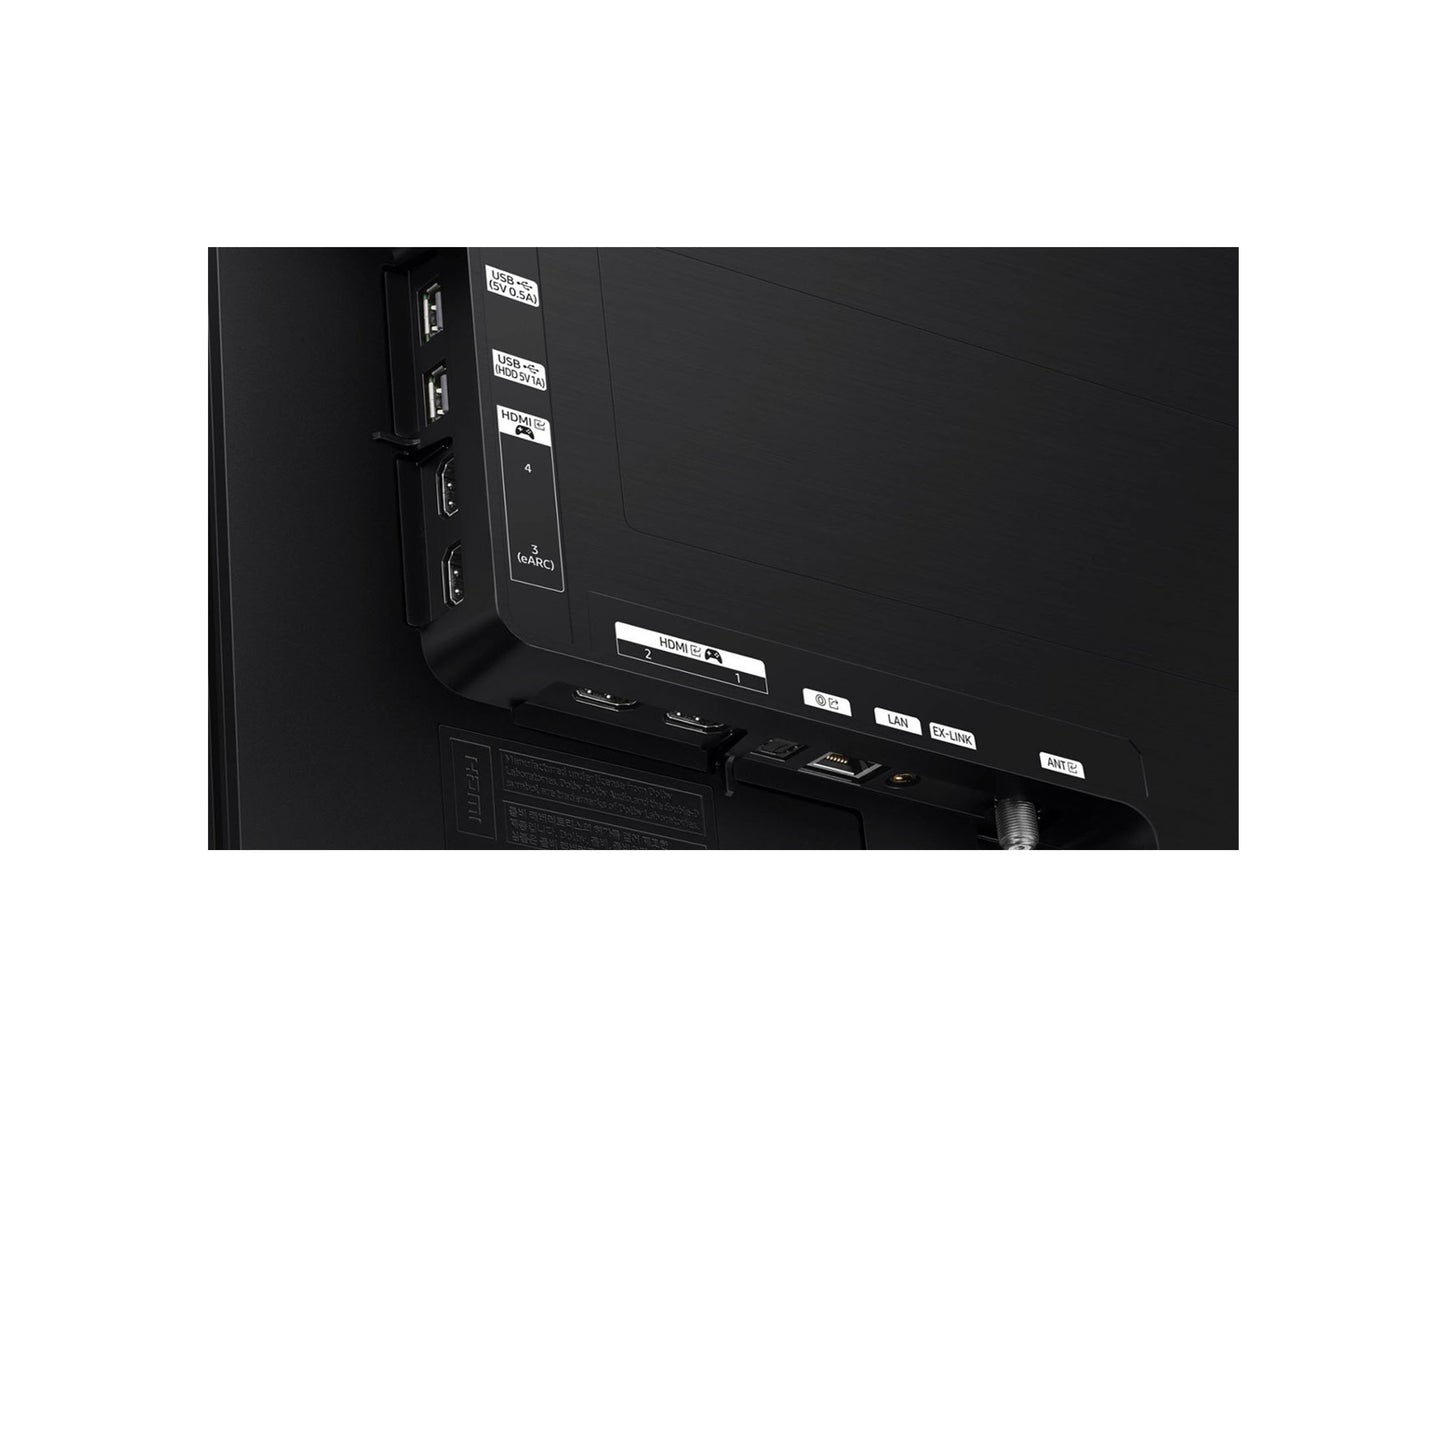 Samsung - تلفزيون 65 بوصة فئة S90D OLED 4K Smart Tizen 